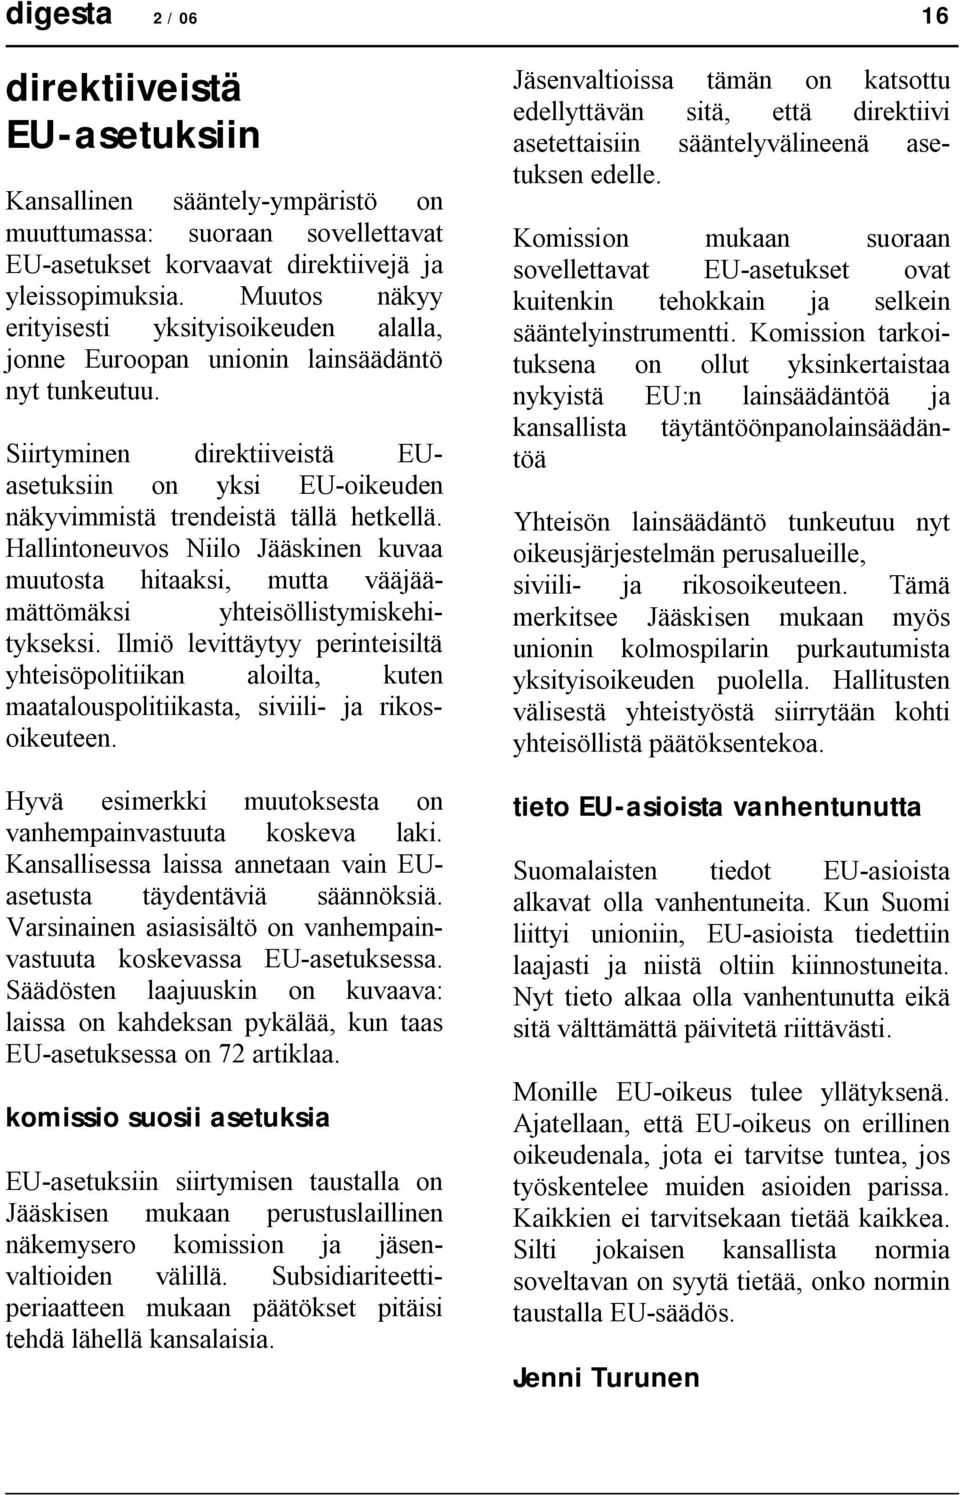 Hallintoneuvos Niilo Jääskinen kuvaa muutosta hitaaksi, mutta vääjäämättömäksi yhteisöllistymiskehitykseksi.